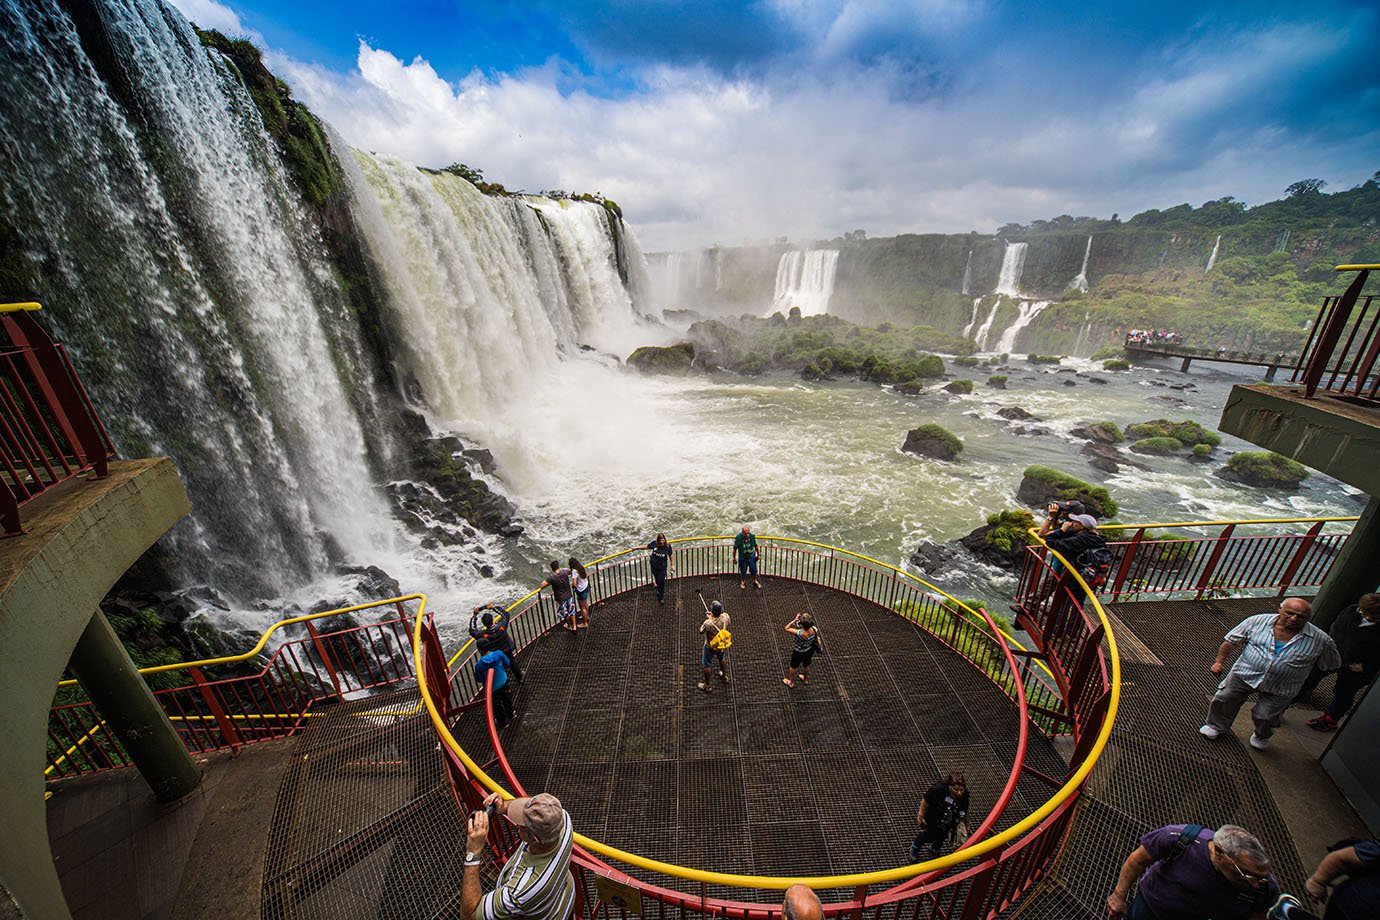 Cataras do Iguaçu - Foz do iguaçu - turismo - Brasil - belezas naturais

Foto: Leandro Fonseca
Setembro 2017